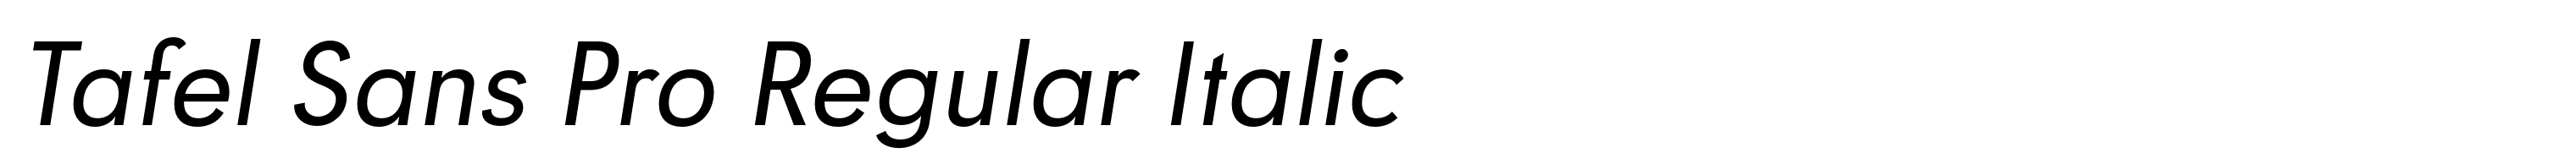 Tafel Sans Pro Regular Italic